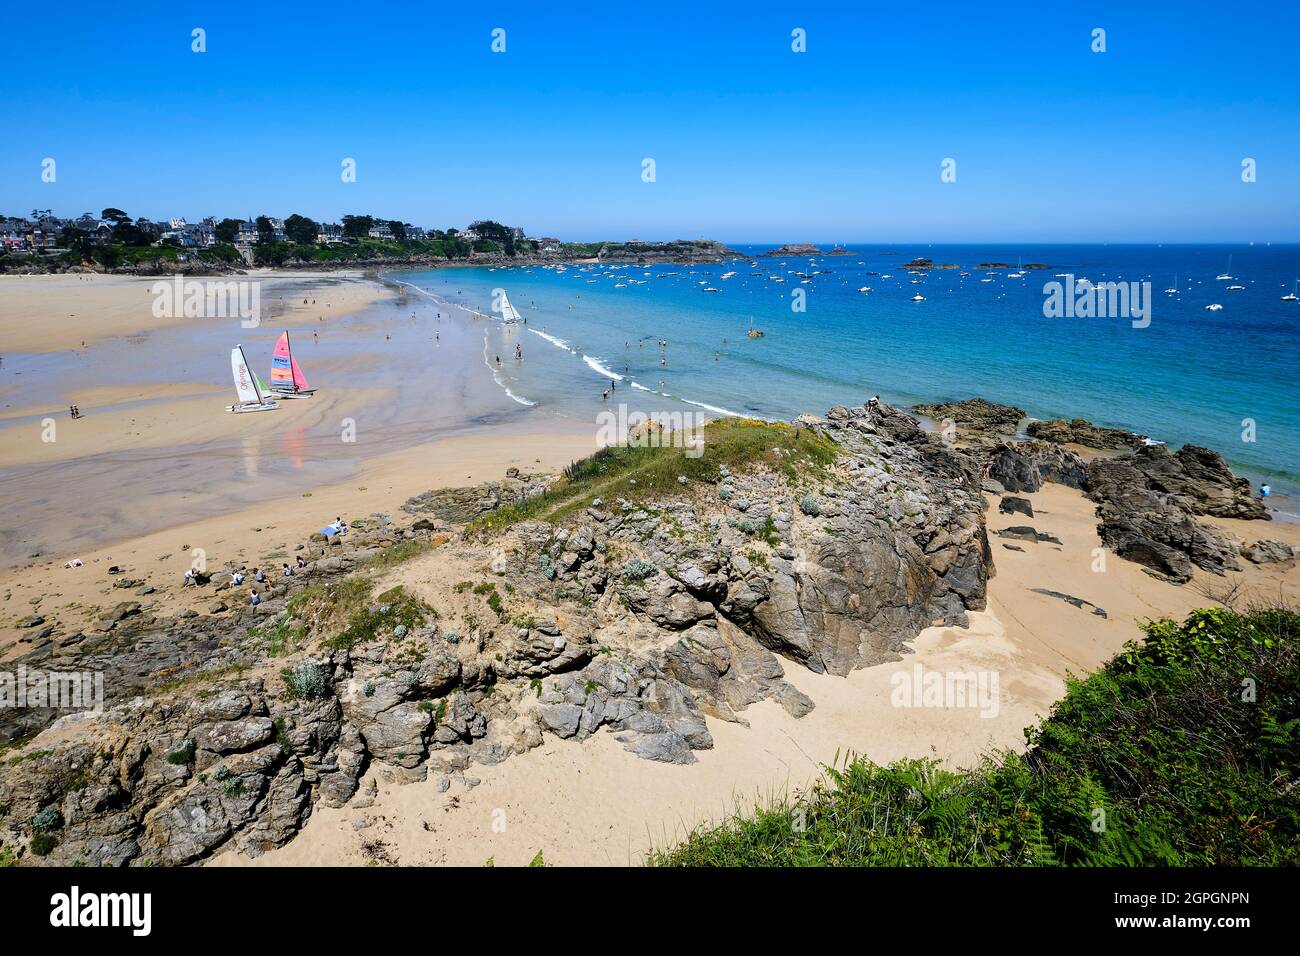 France, Ille et Vilaine, Cote d'Emeraude (Emerald Coast), Saint Lunaire, the beach of Saint Lunaire with Pointe du décollé in the background Stock Photo